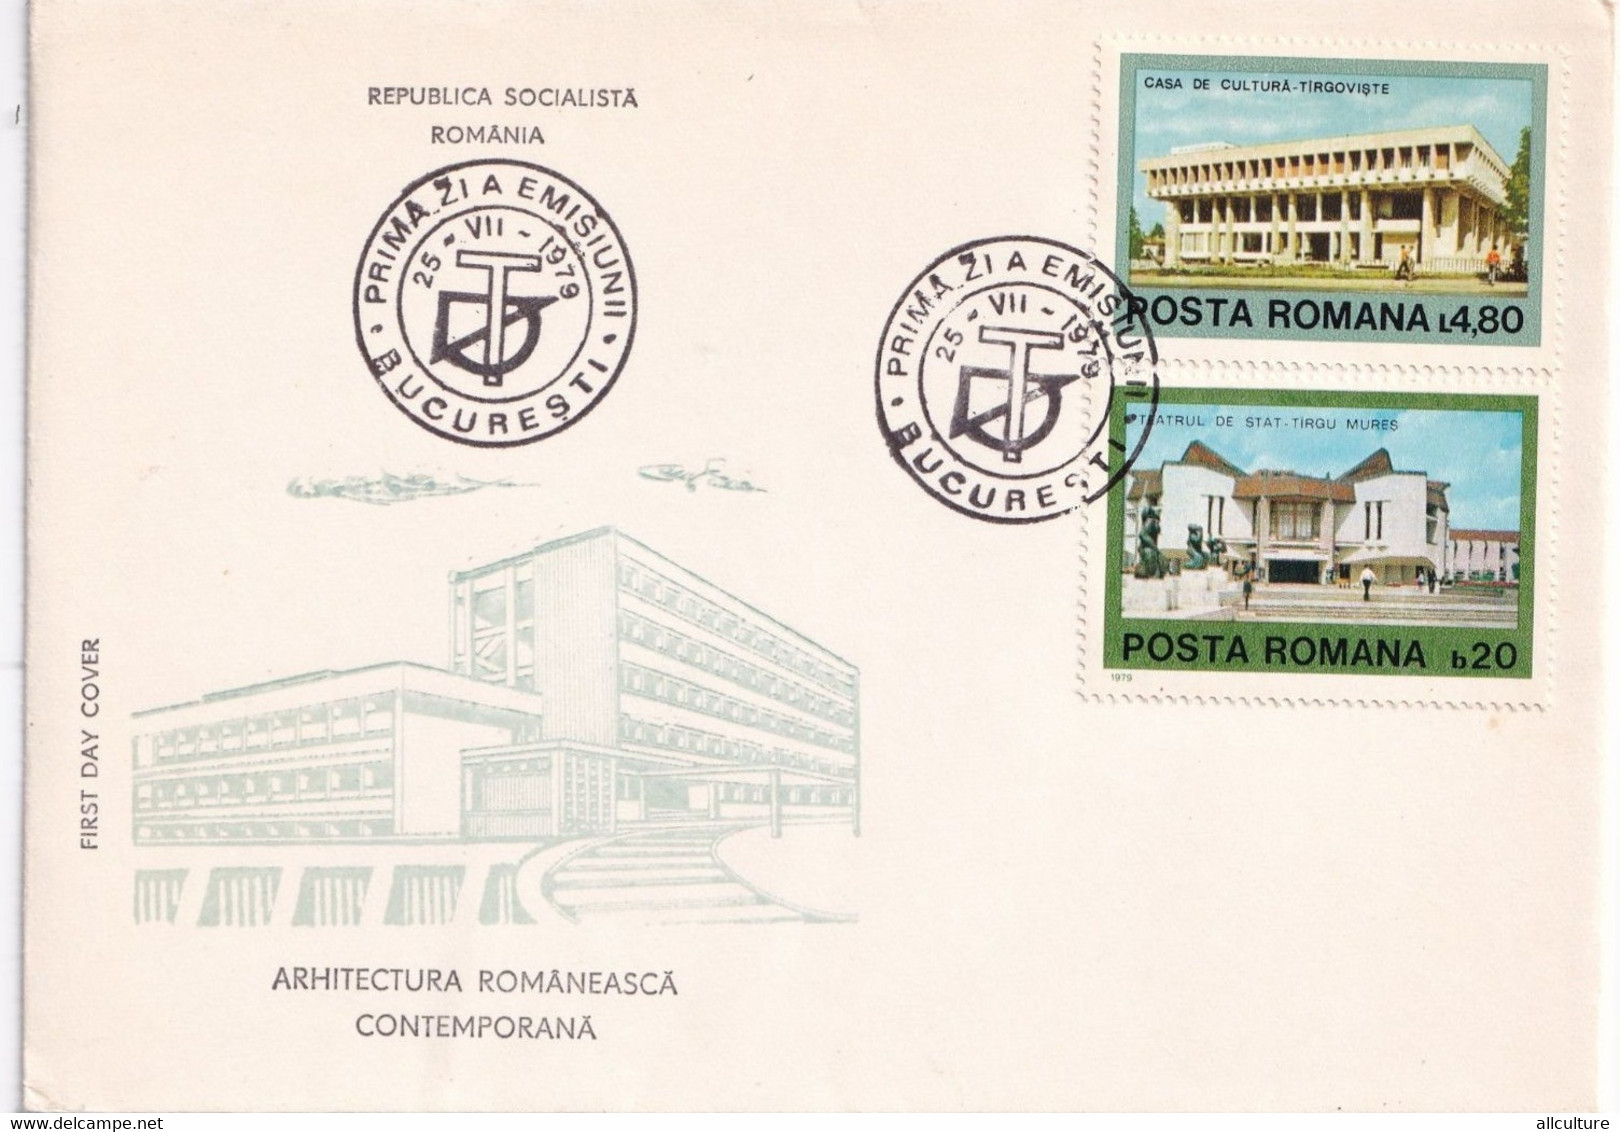 A2662- Arhitectura Romaneasca Contemporana , Republica Socialista Romania, Bucuresti 1979 3 Covers FDC - FDC